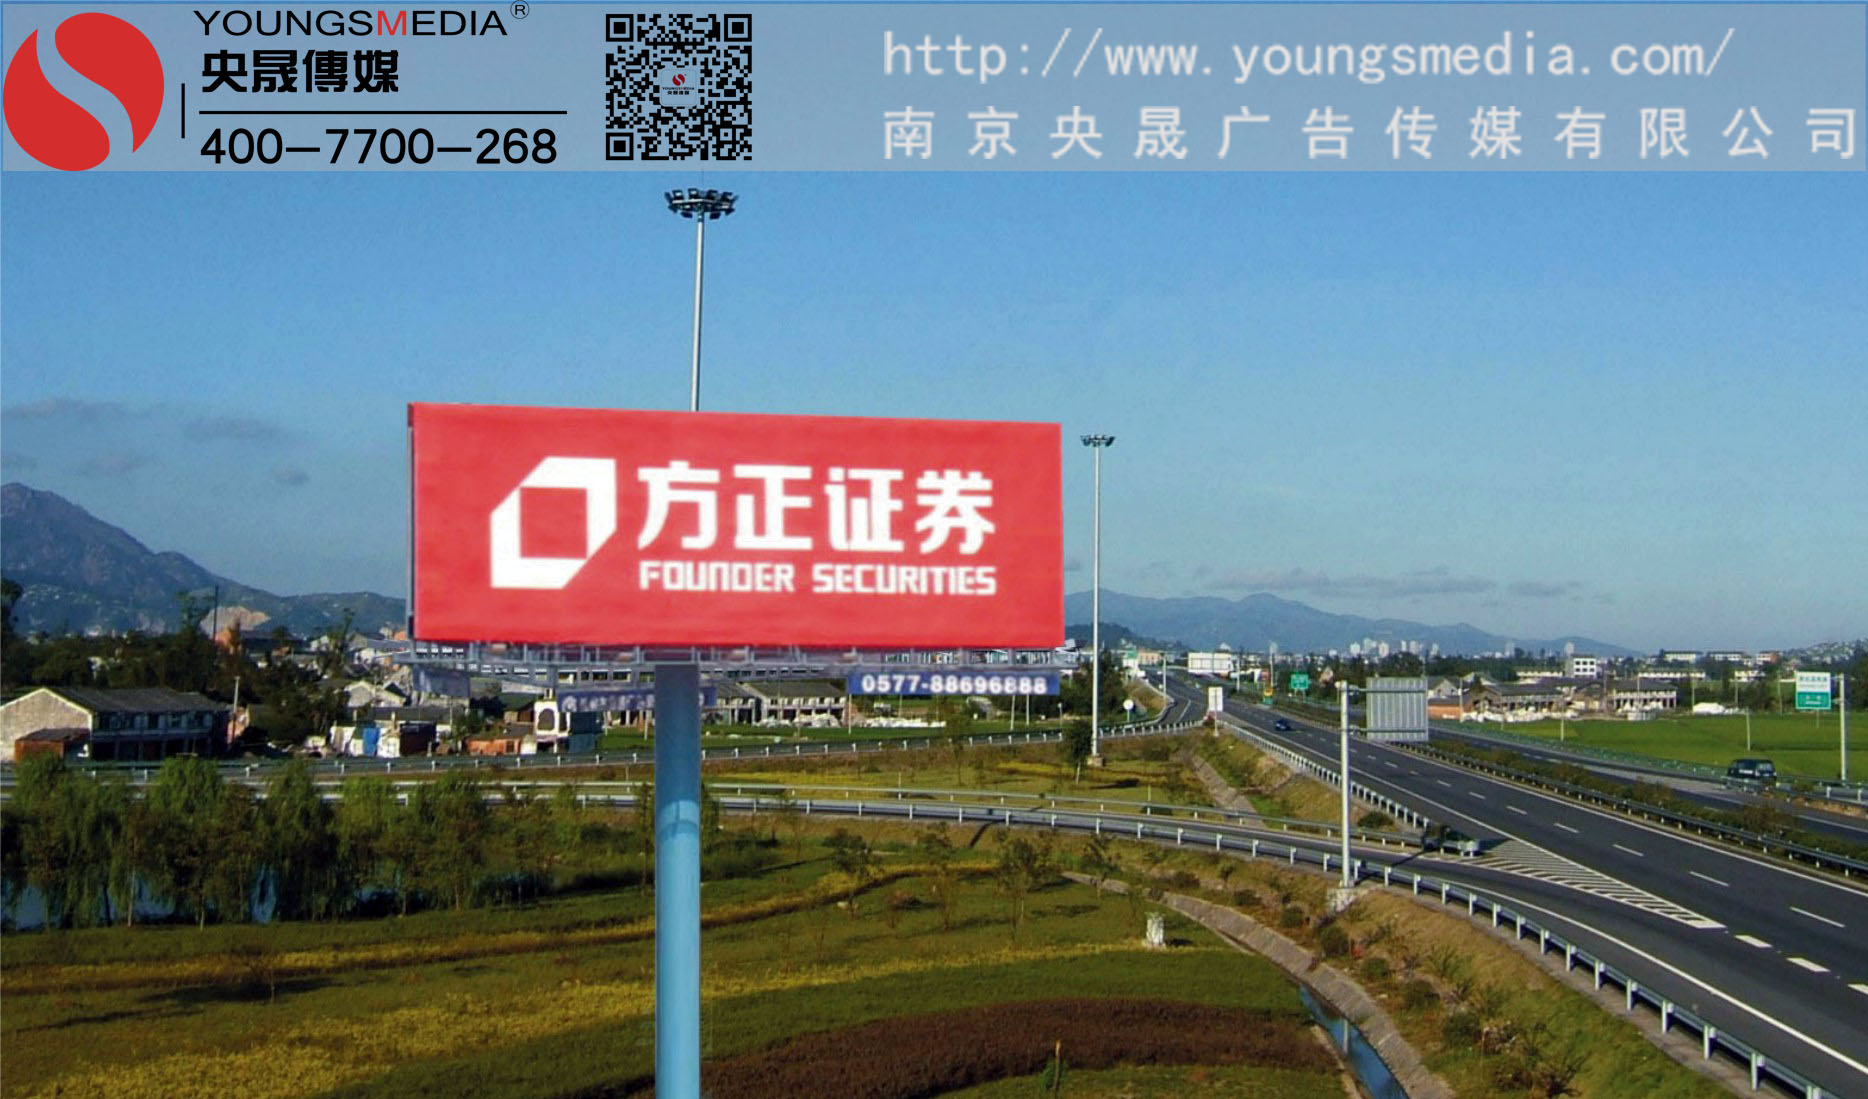  上海南北高架霓虹灯广告投放找央晟传媒